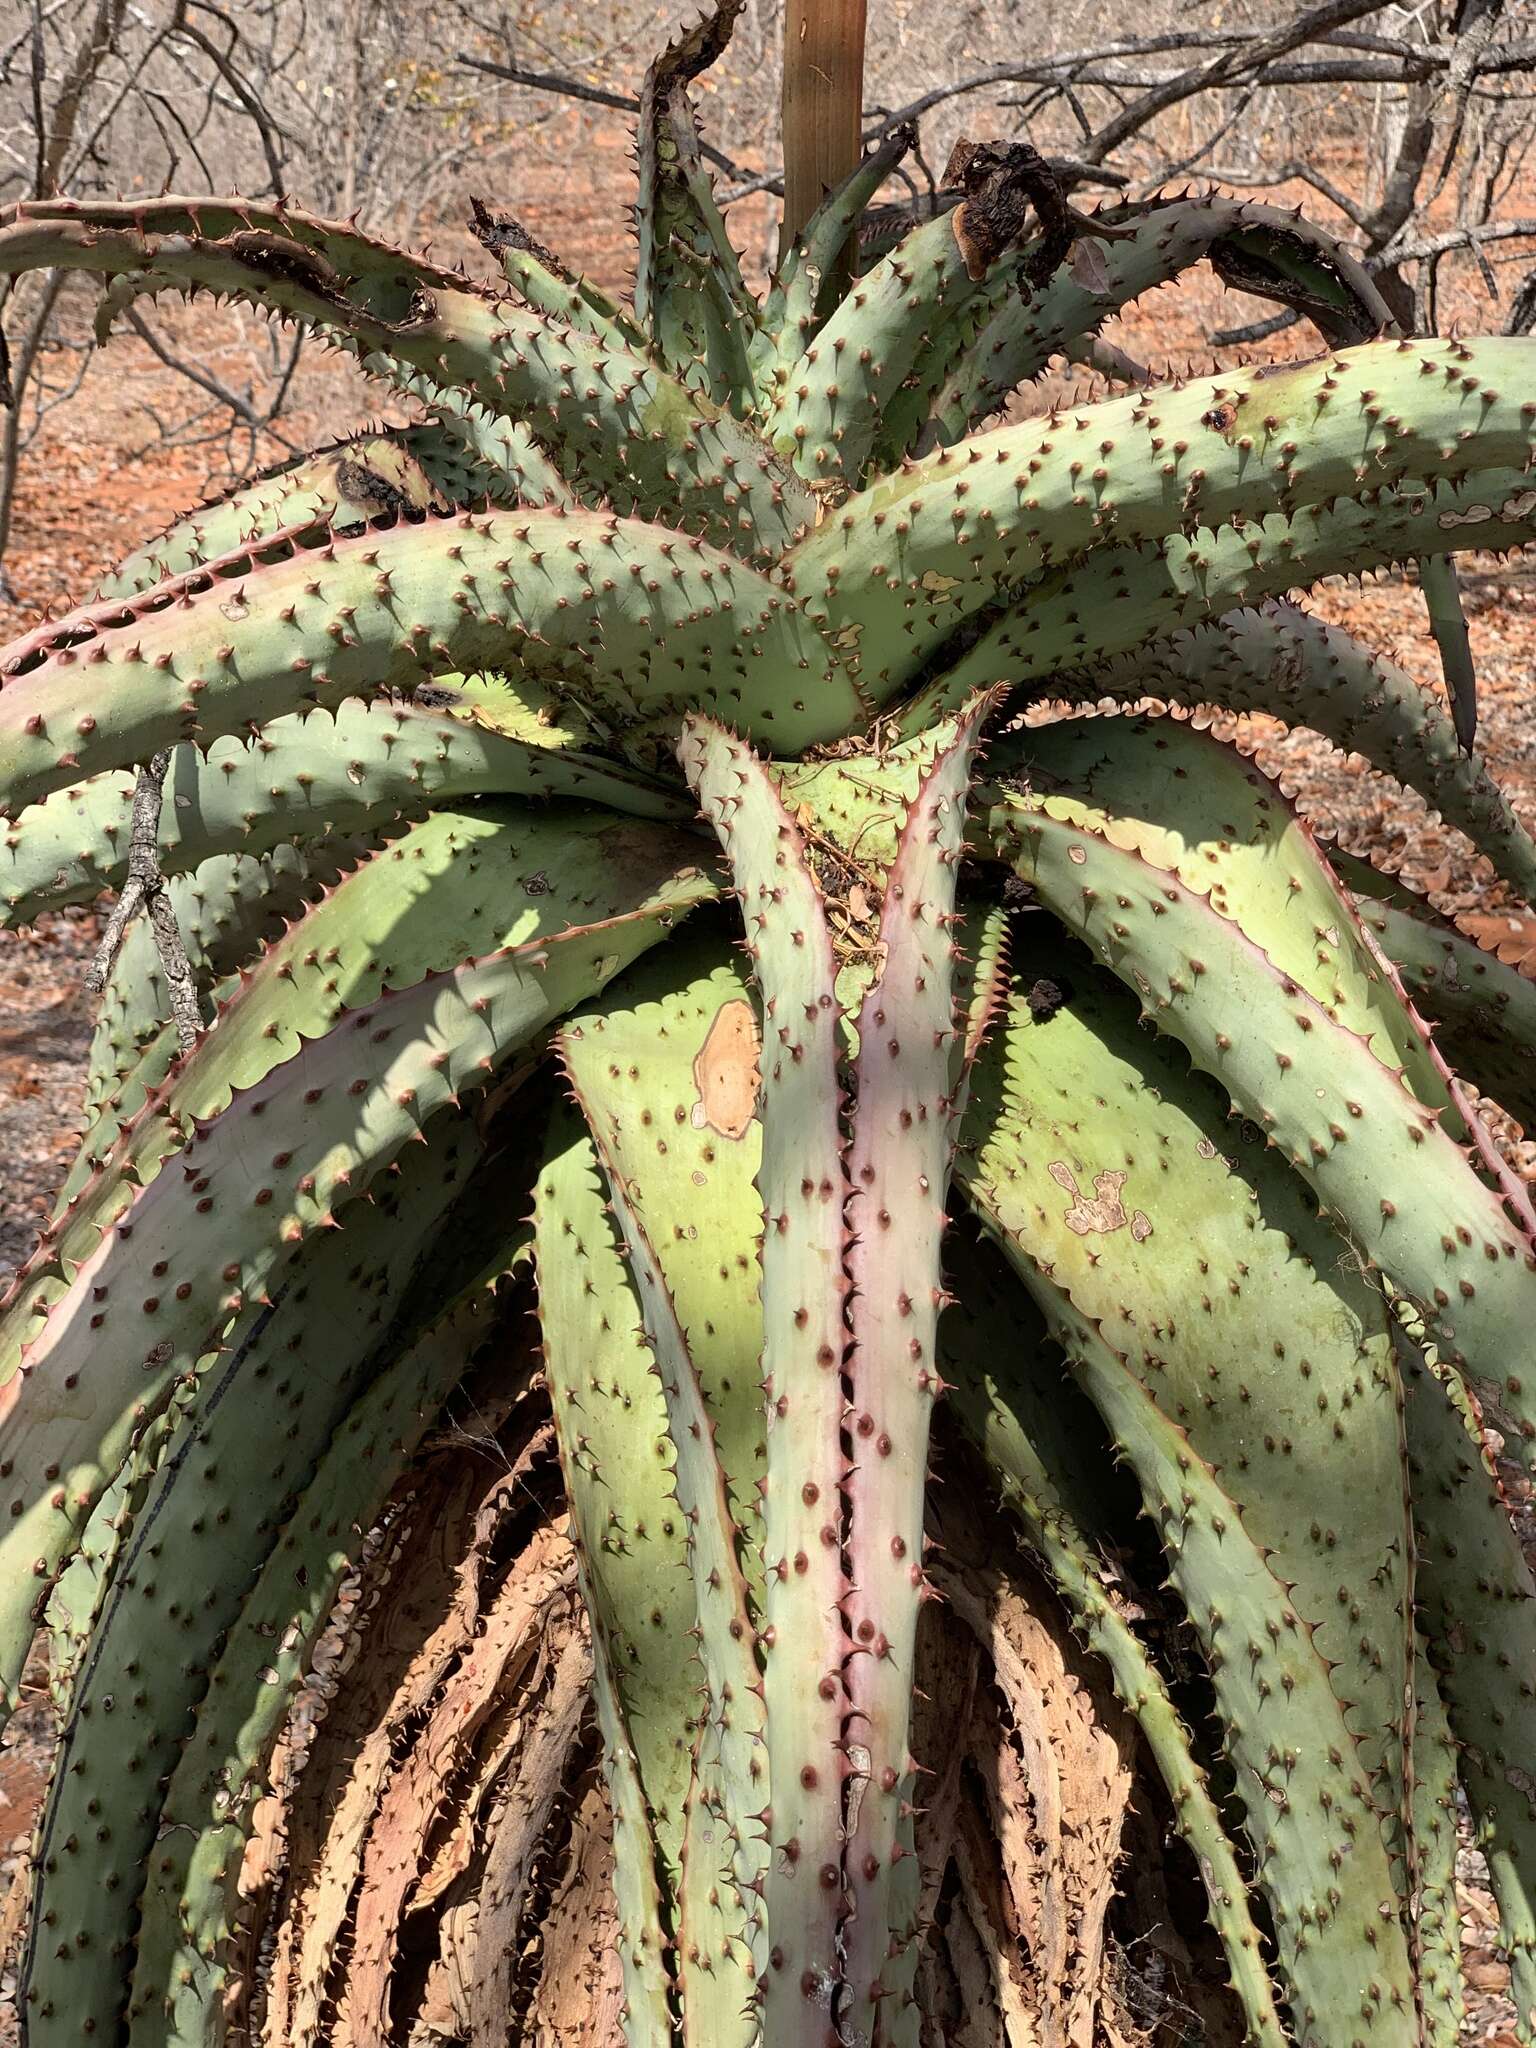 Image of Aloe marlothii subsp. marlothii